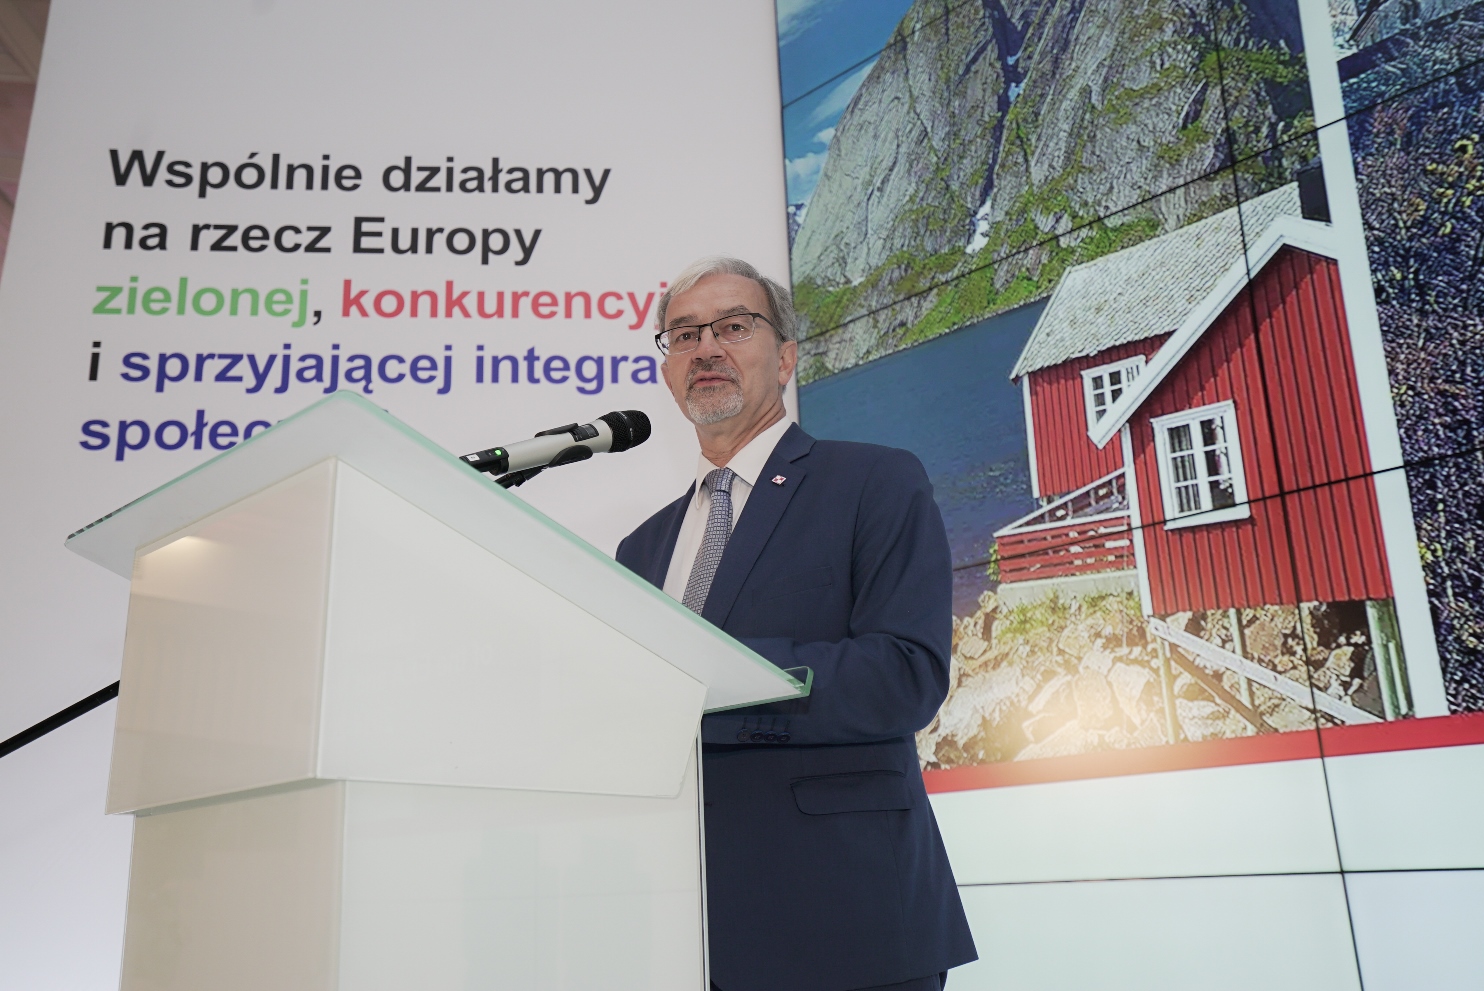 Jerzy Kwieciński – Minister Inwestycji i Rozwoju